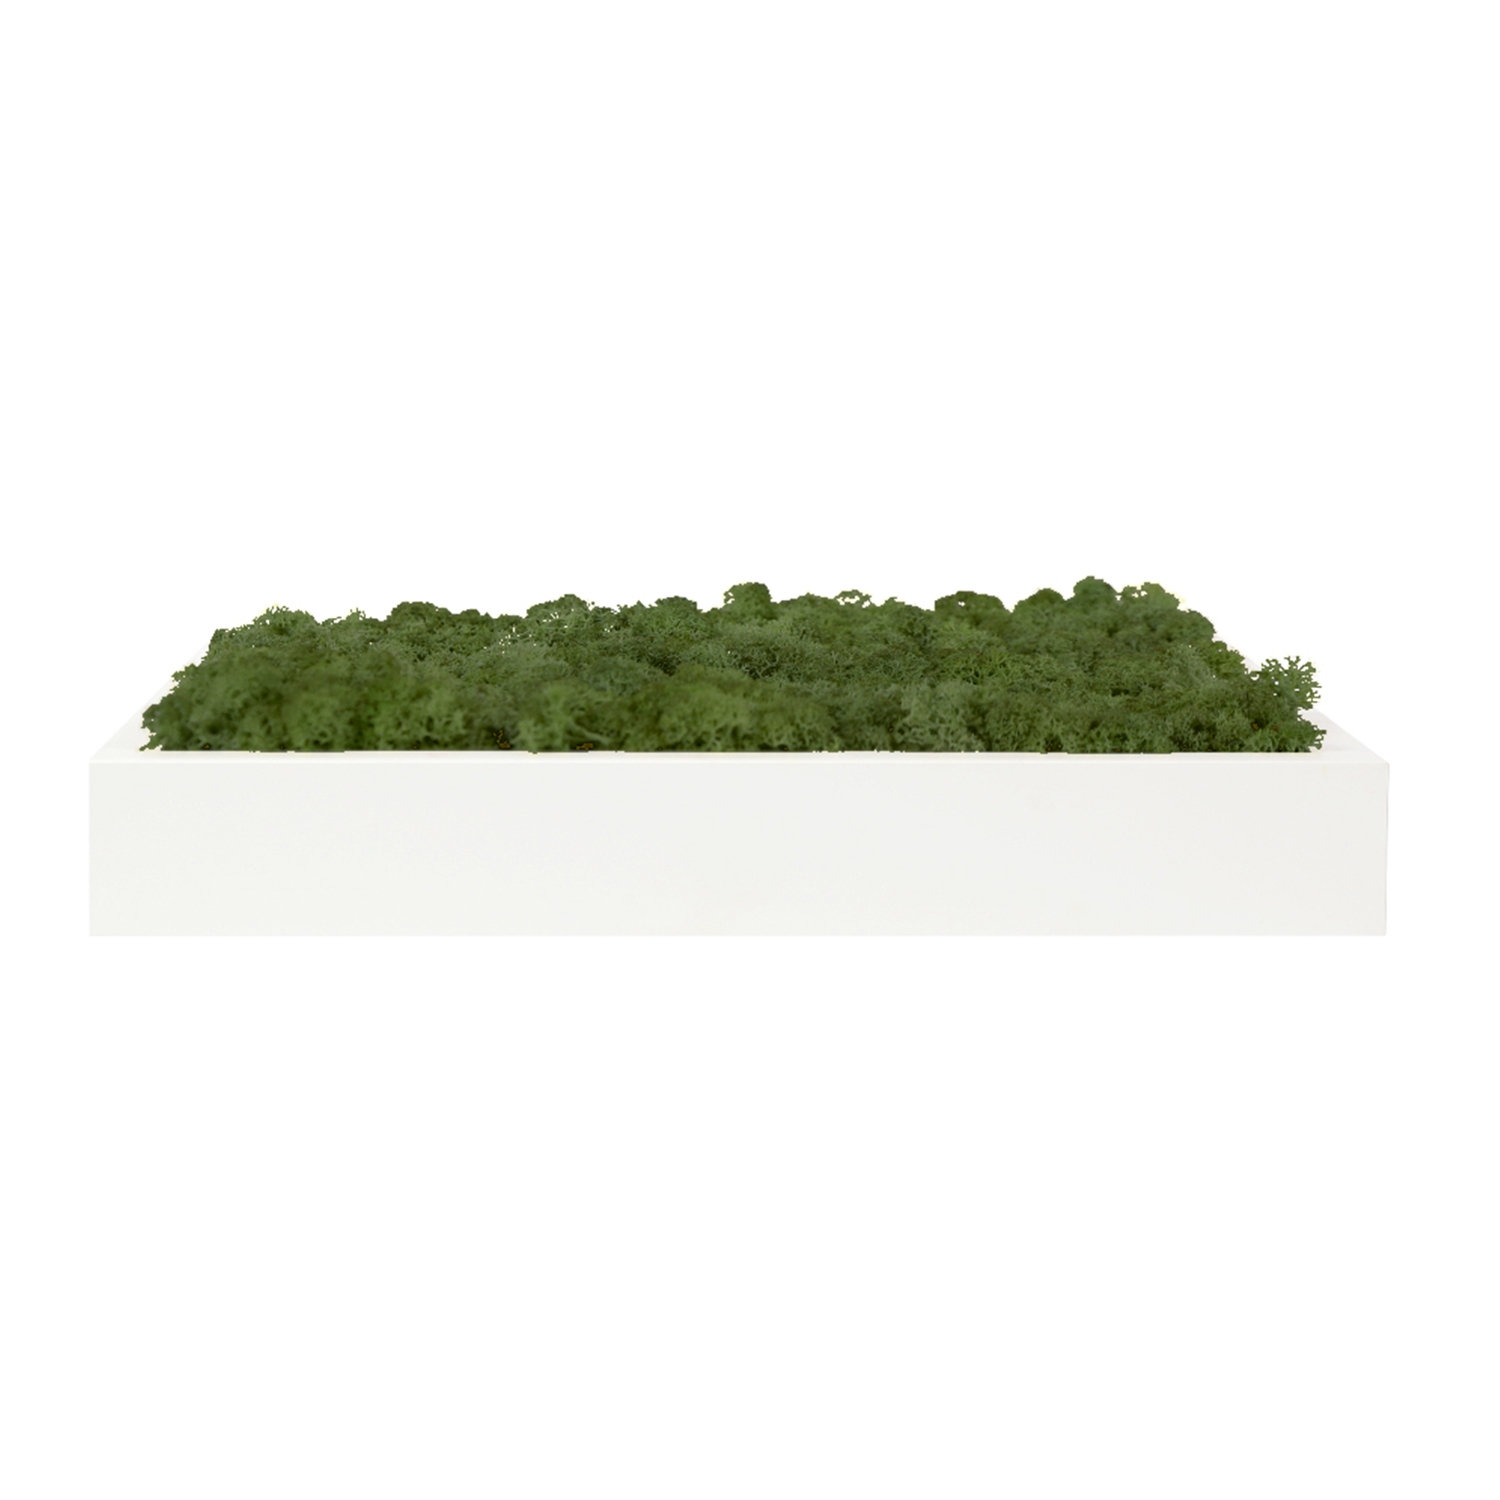 스칸디아모스액자 프라모 프레임_화이트 ( 25색상 )실내 공기정화식물 벽면인테리어소품 천연이끼 스칸디아모스 식물액자 플랜테리어